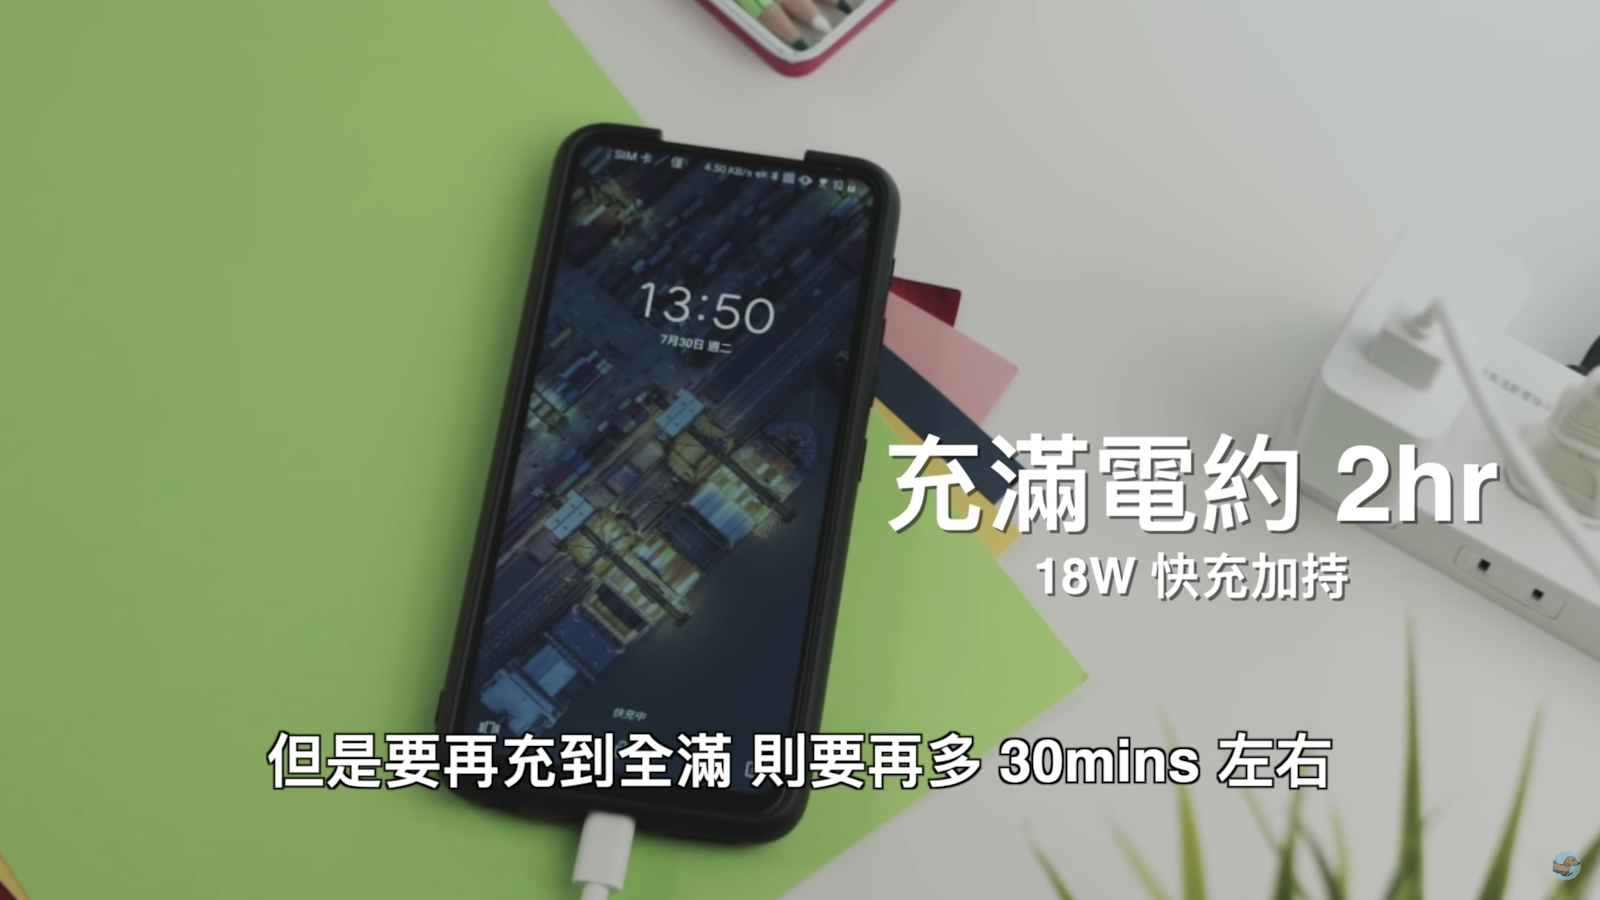 六個月使用心得 ASUS ZenFone 6 開箱升級 Android 10 體驗評測｜ZF6 開箱、值不值得買？hoda｜Sony /Huawei/Samsung/iPhone 拍照比拚｜科技狗 - android, ANDROID 10, Android10, ASUS, Snapdragon, zenfone6, ZF6, 高通855 - 科技狗 3C DOG